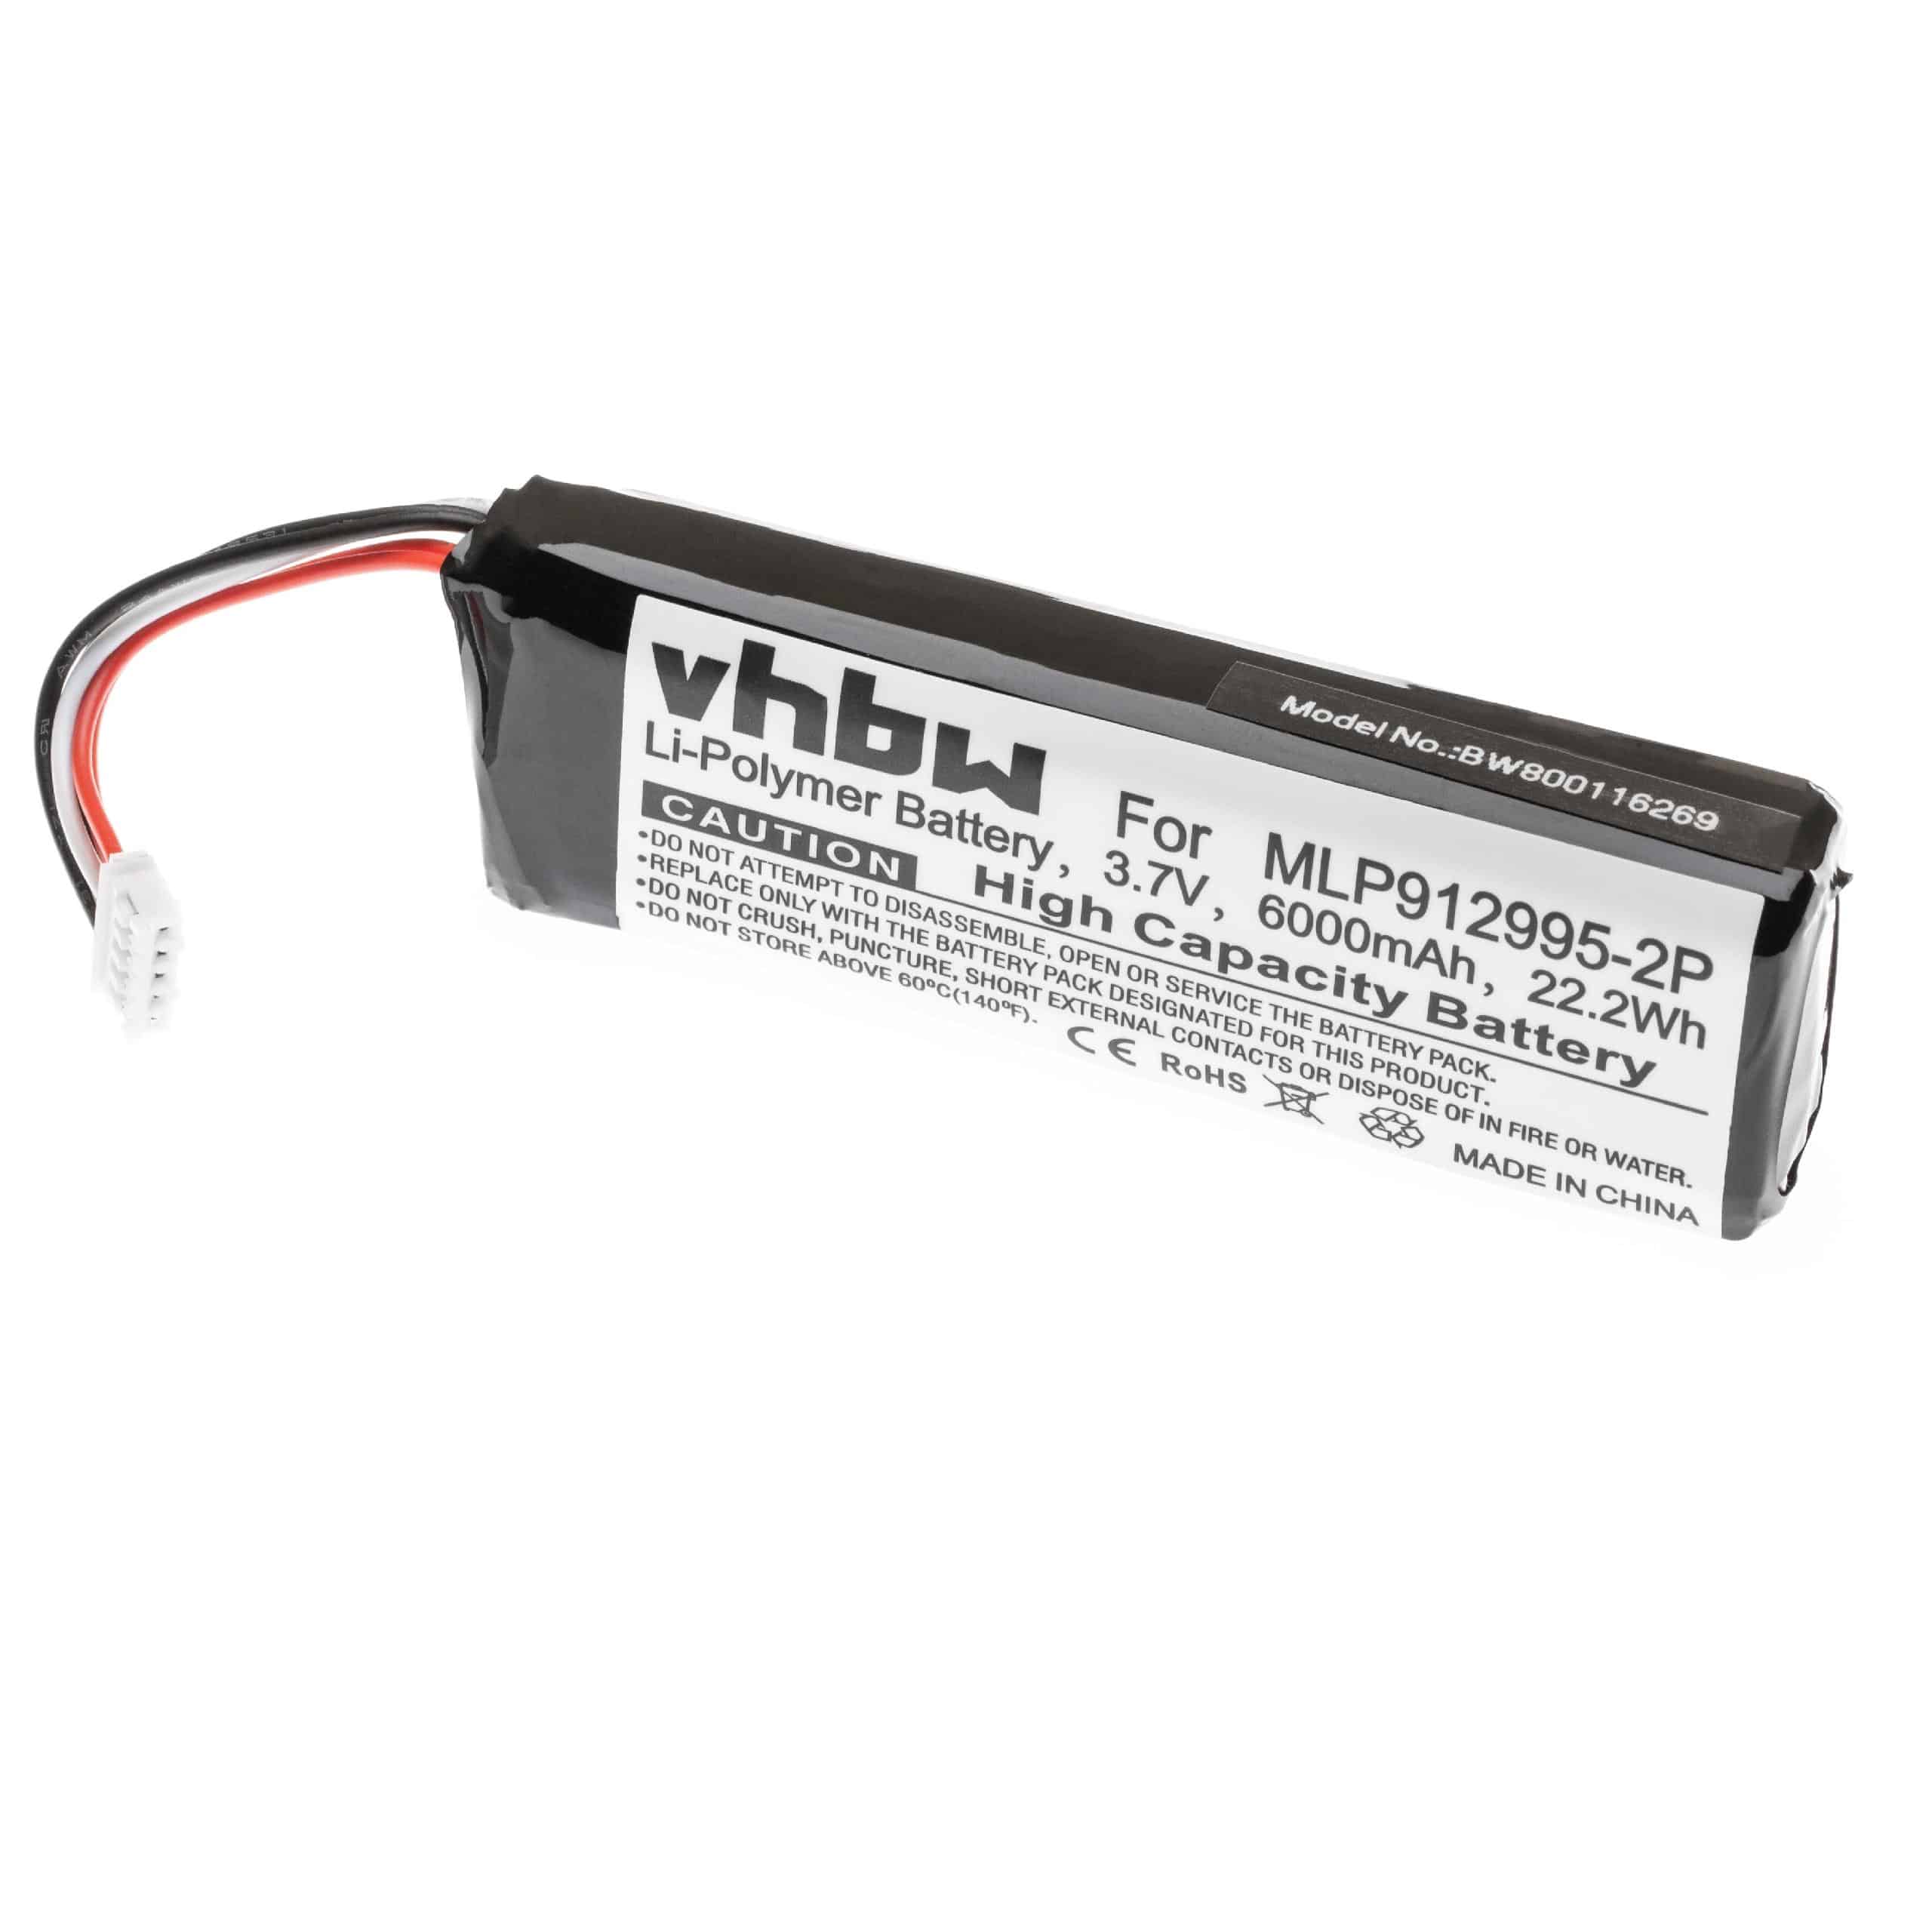  Battery replaces JBL MLP912995-2P for JBLLoudspeaker - Li-polymer 6000 mAh